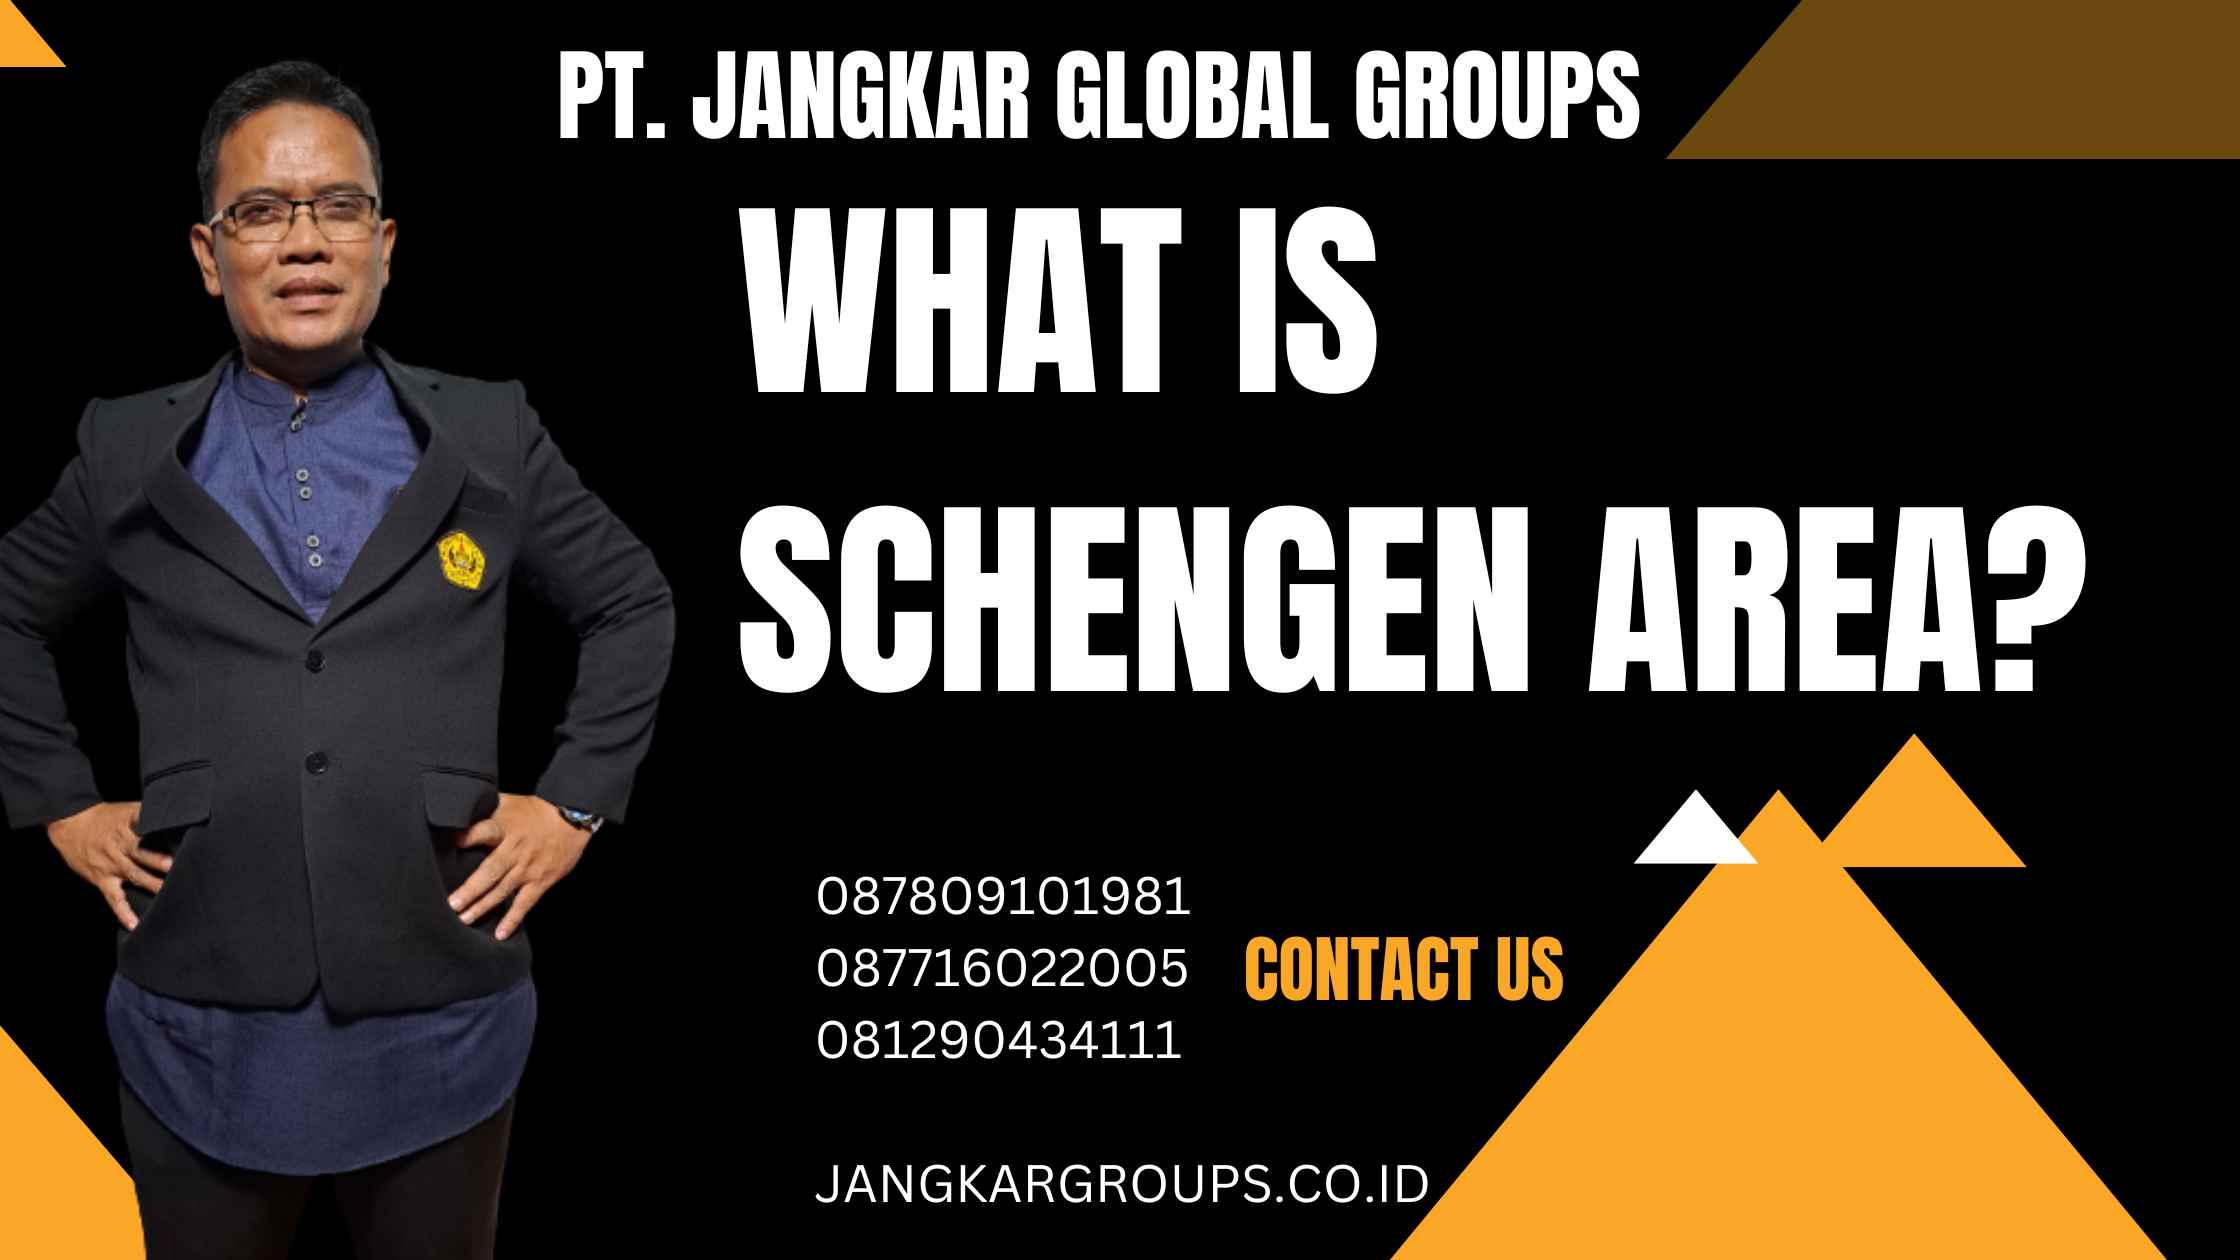 What is Schengen Area?